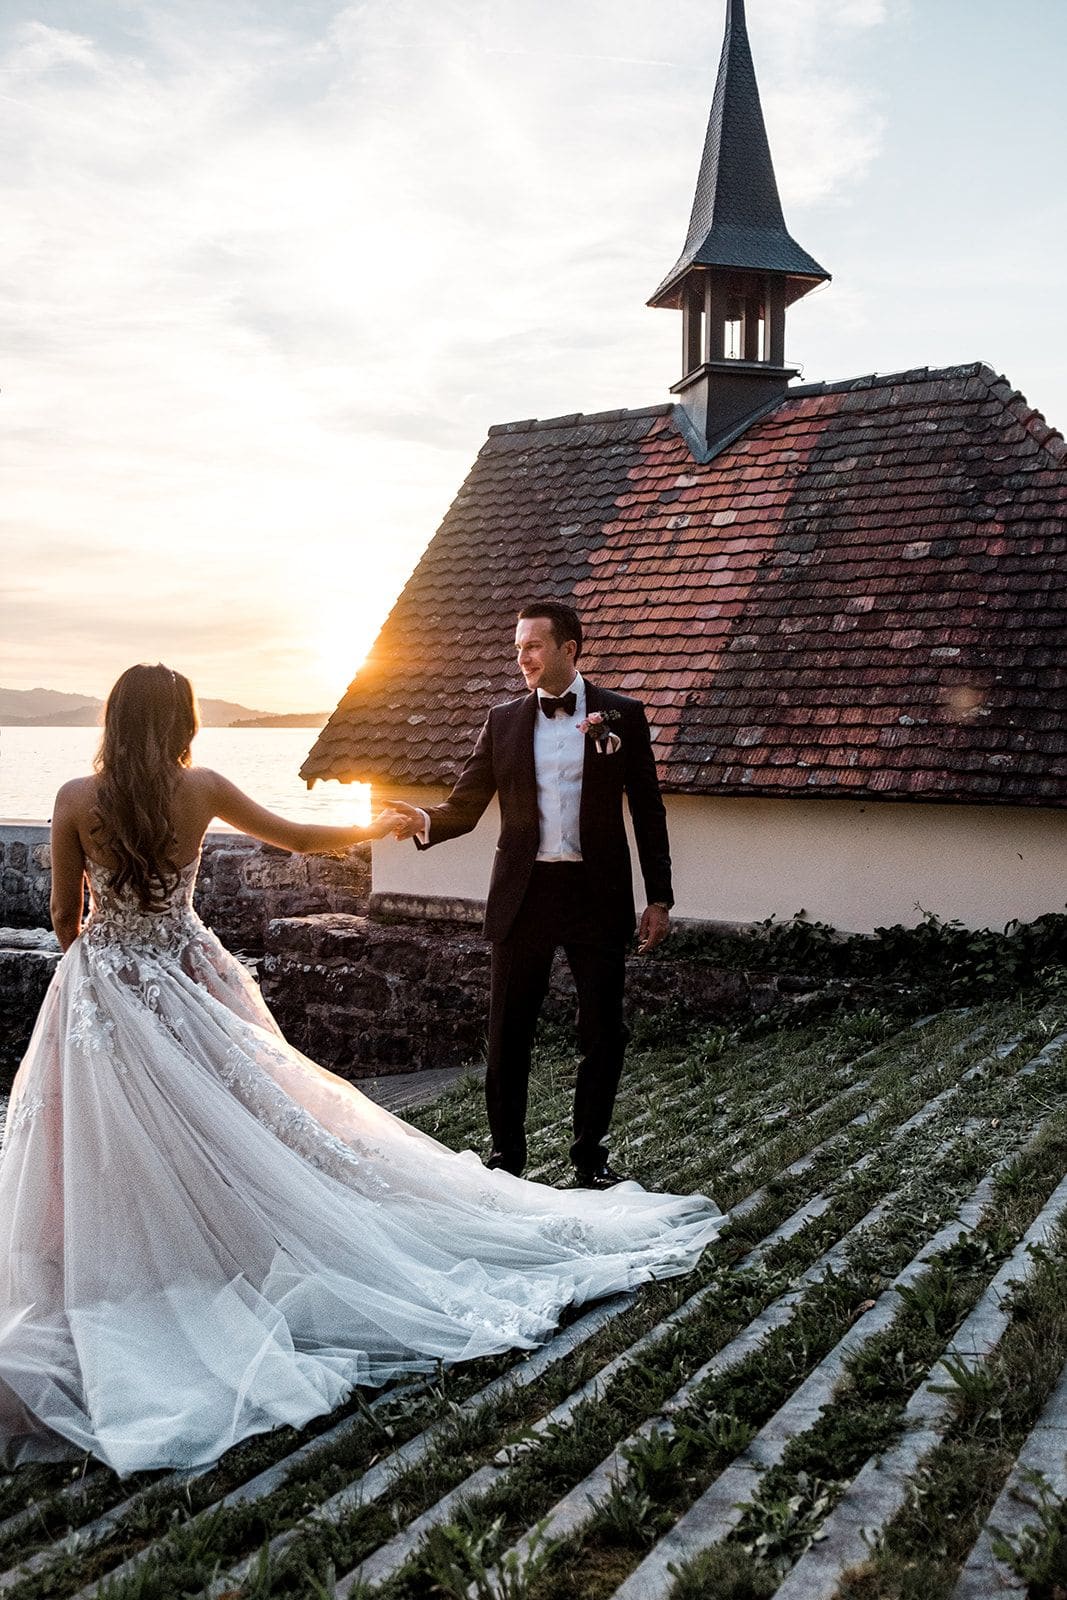 Bride and groom dancing during Switzerland wedding portraits